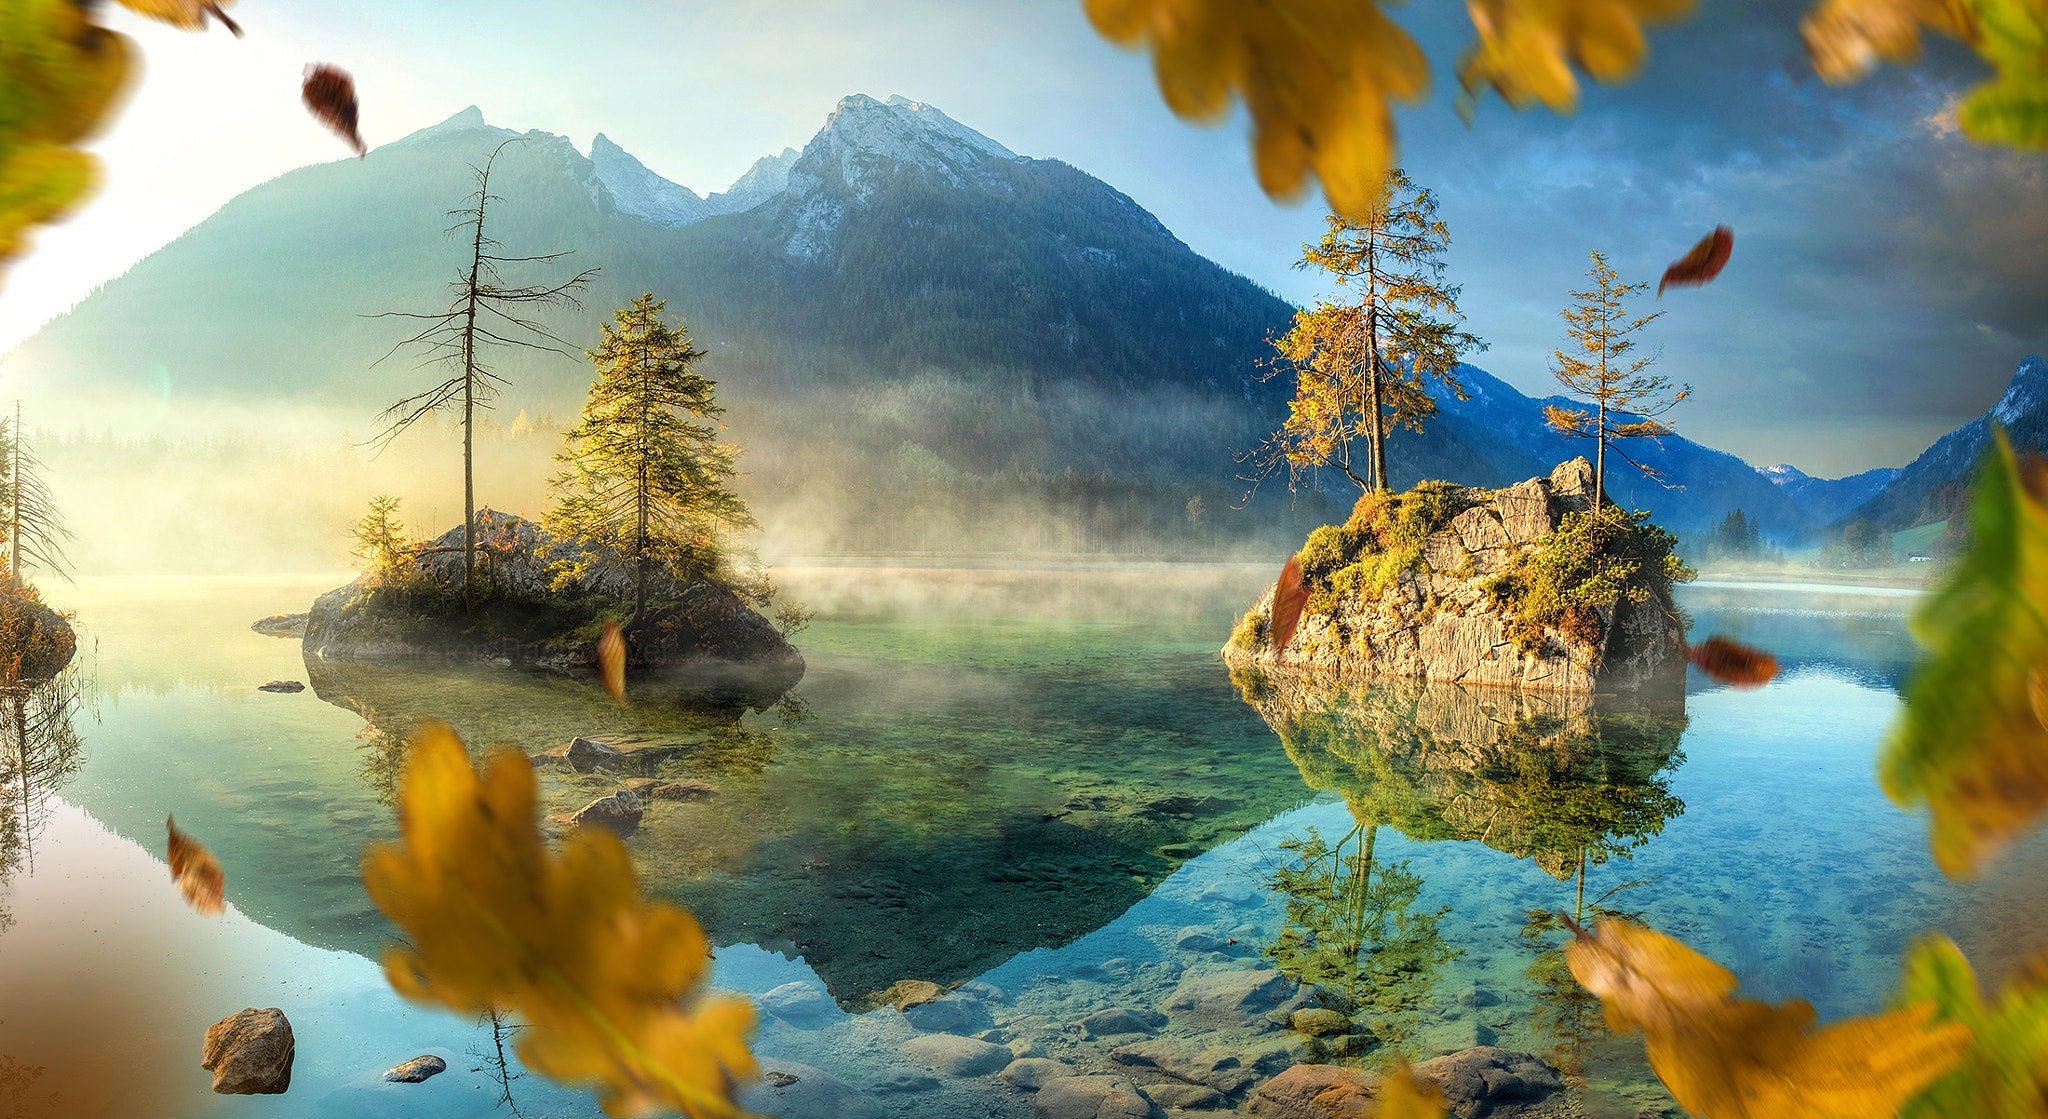 Картинка: Озеро, вода, горы, пейзаж, осень, листья